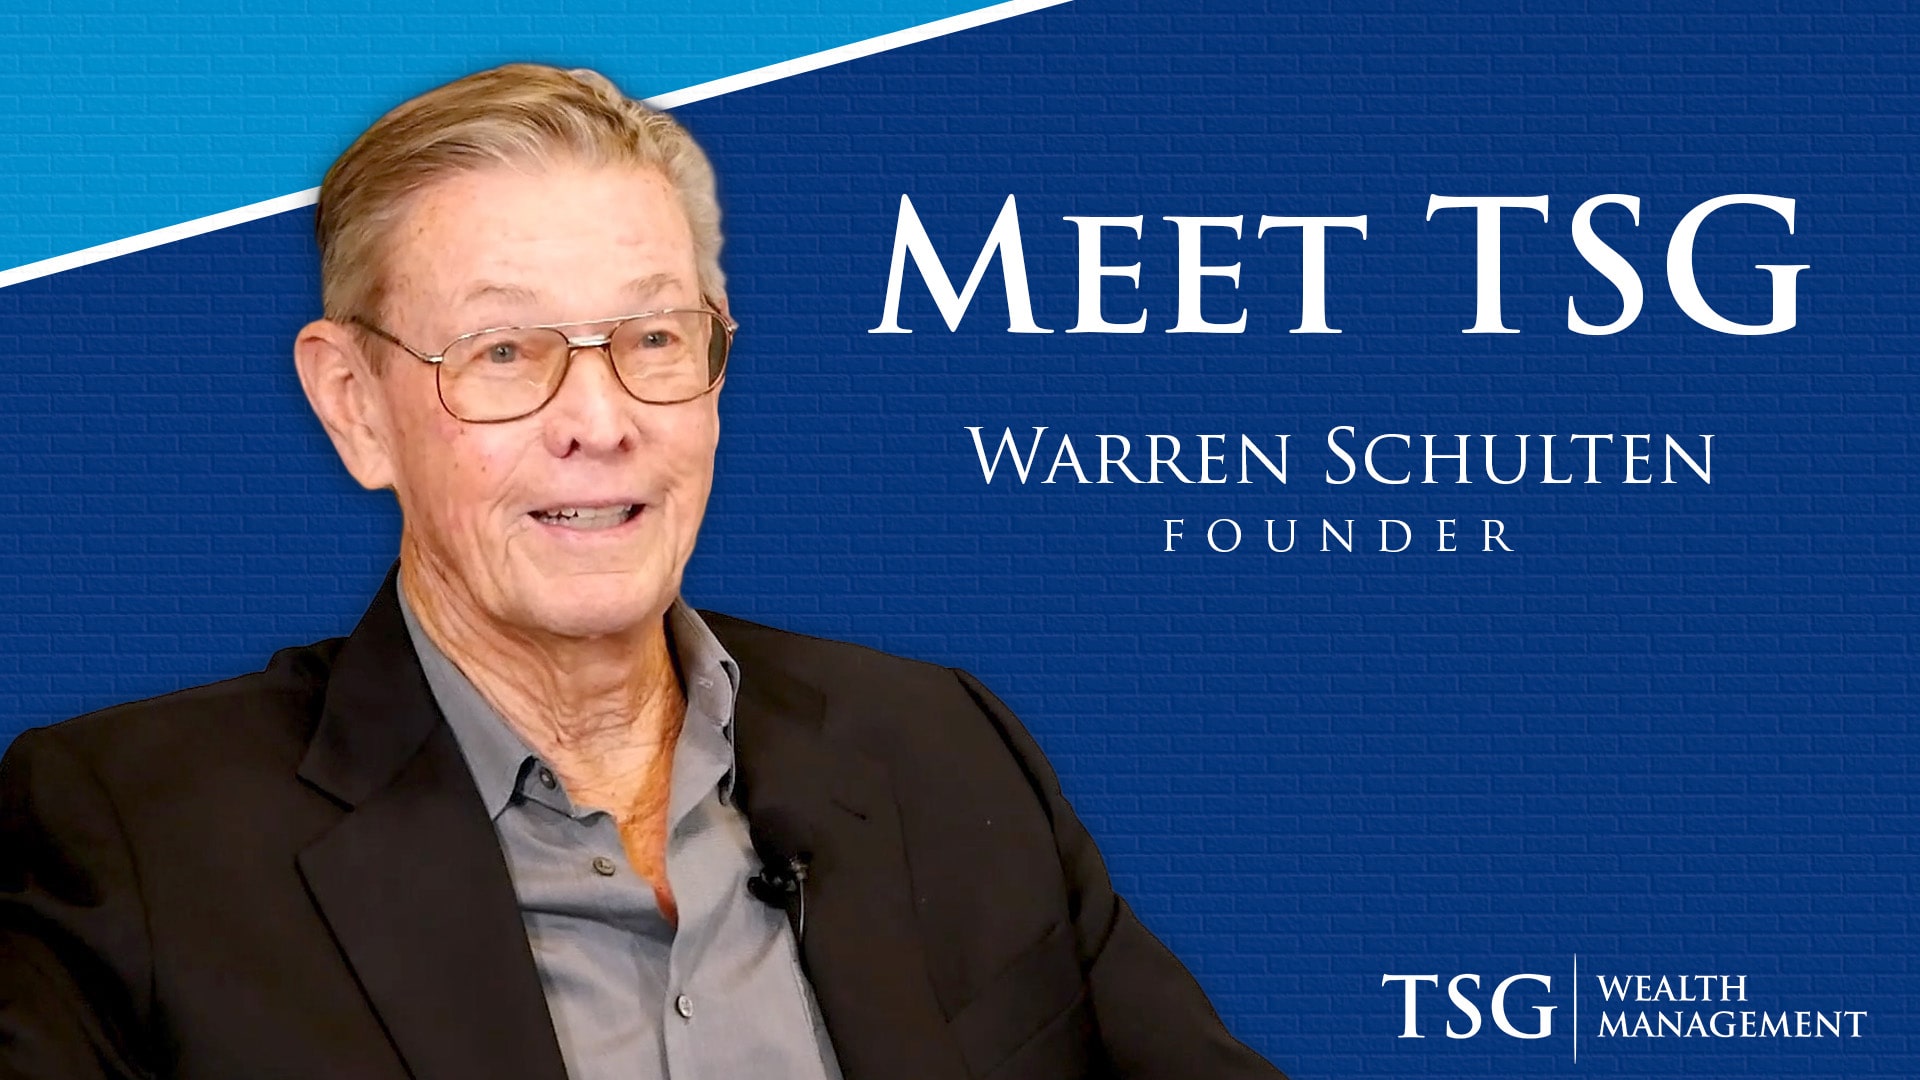 Meet TSG Founder Warren Schulten